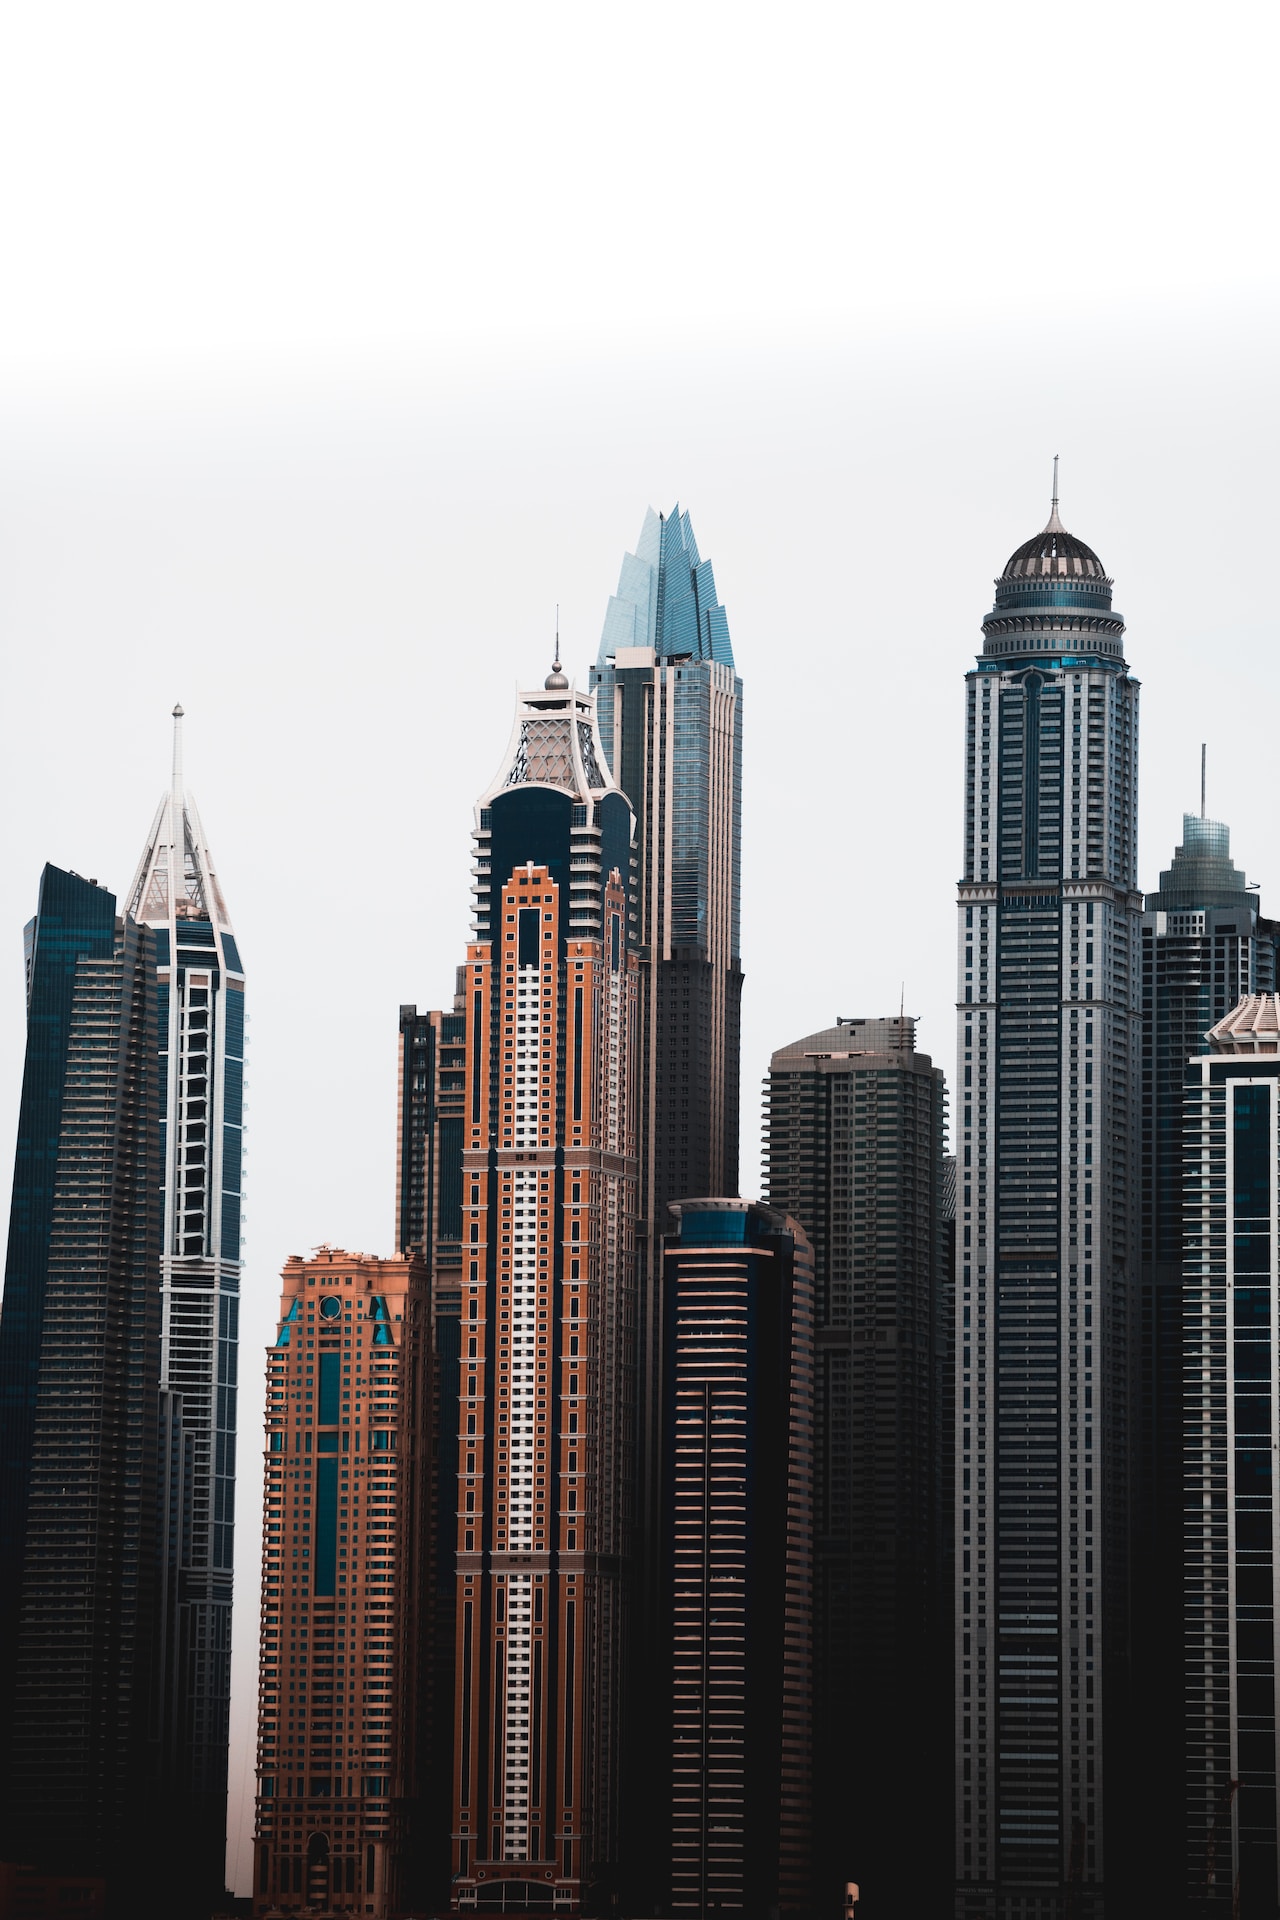 Which floor is best to visit in Burj Khalifa?